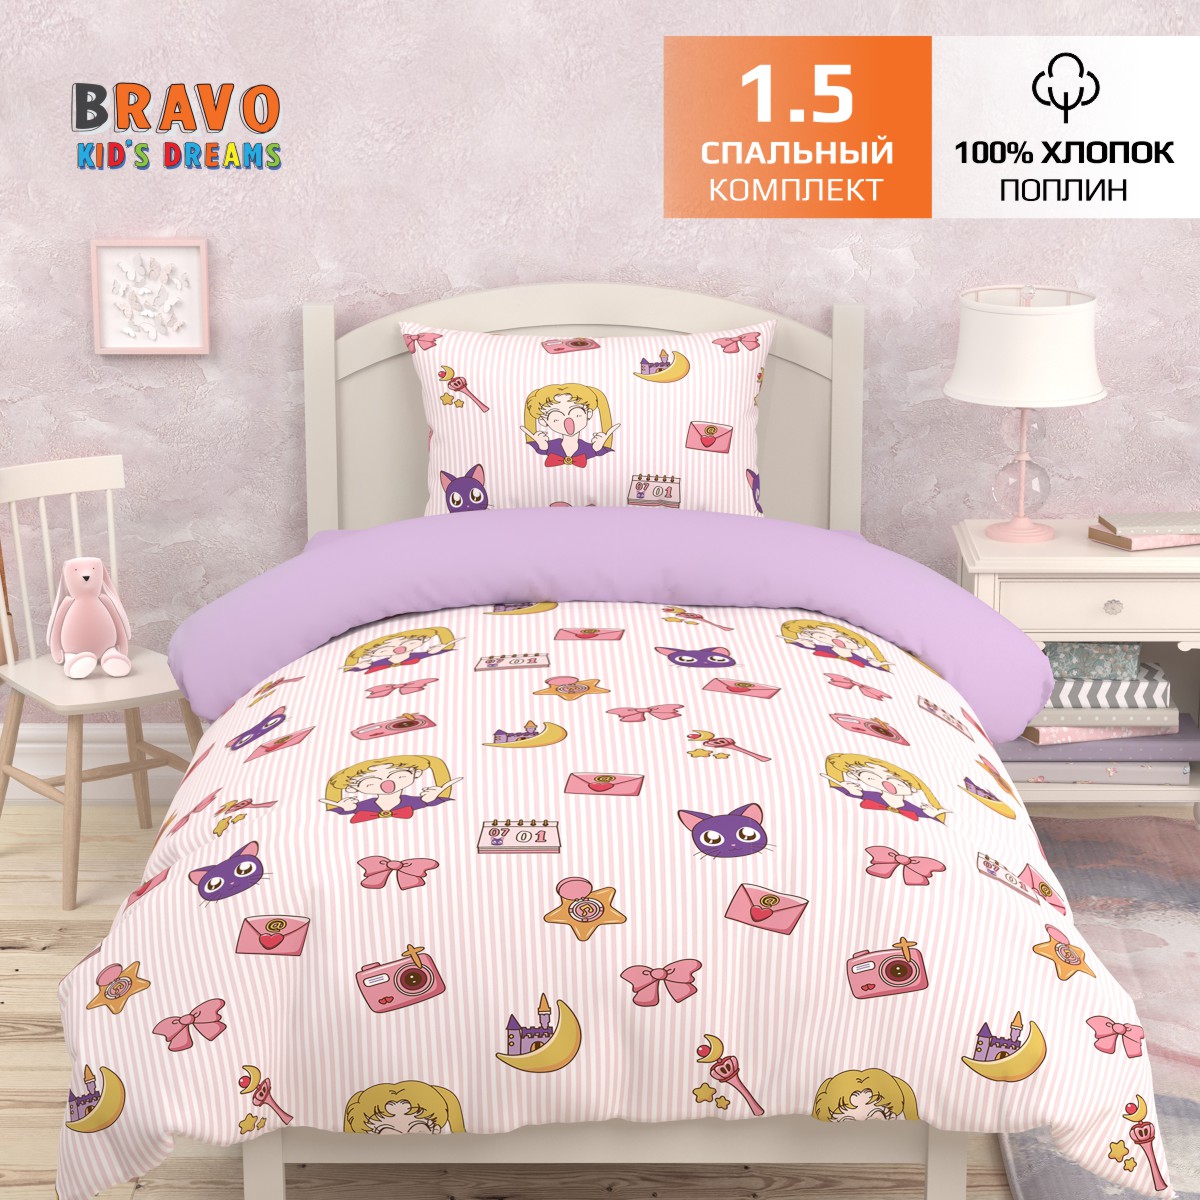 Комплект постельного белья BRAVO kids dreams Аниме 1.5 спальный 3 предмета - фото 1